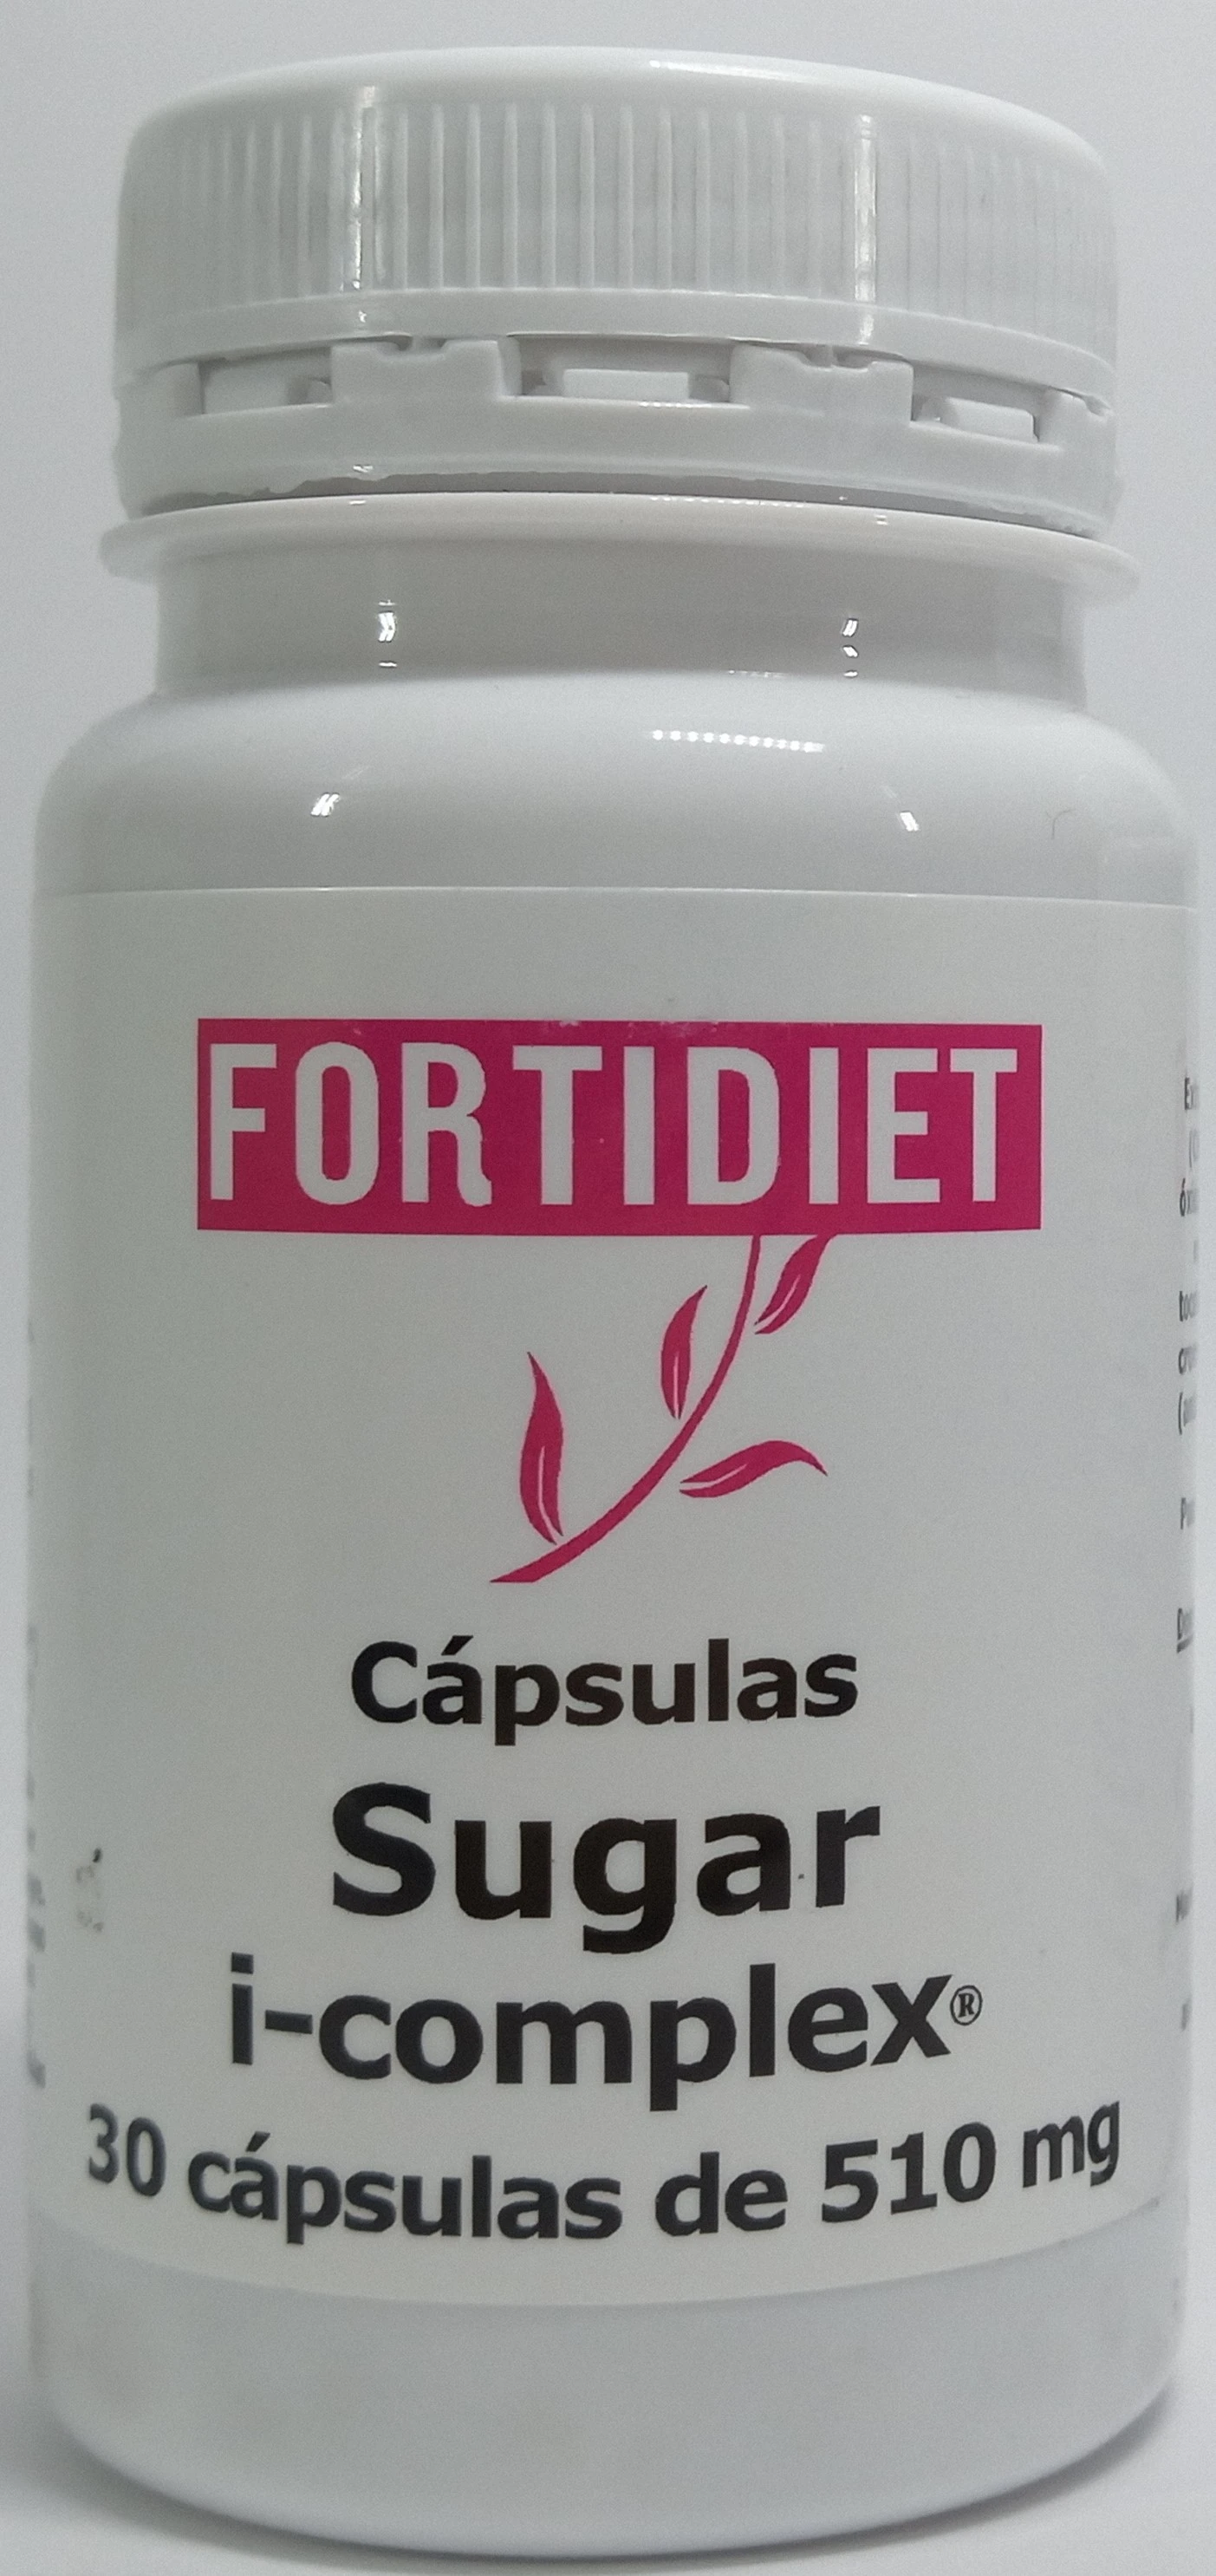 Fortidiet Sugar i-complex 30 caps.